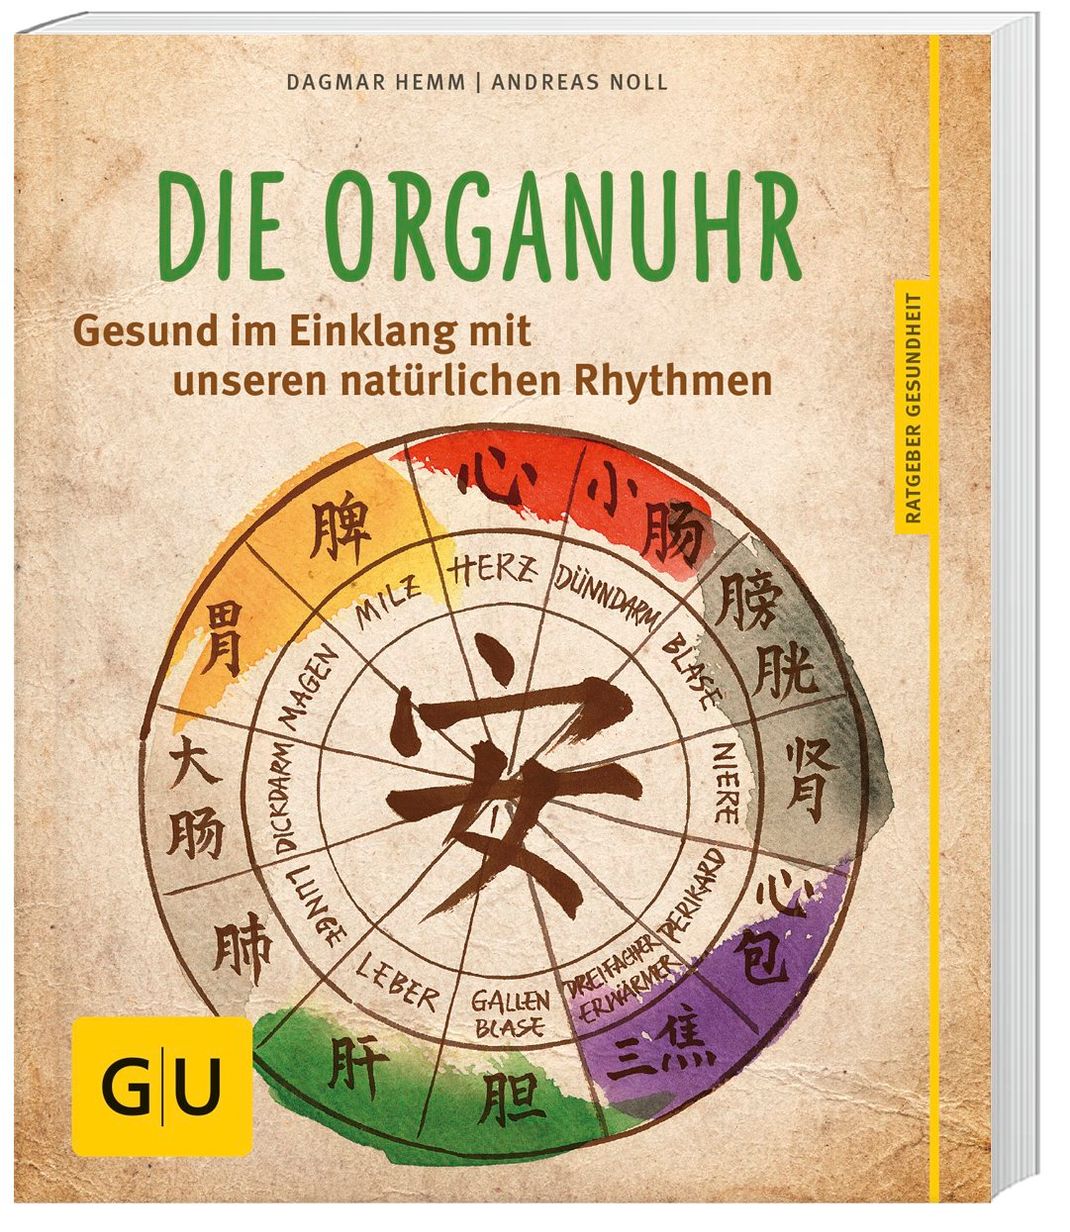 Die Organuhr Buch von Dagmar Hemm versandkostenfrei bei Weltbild.at